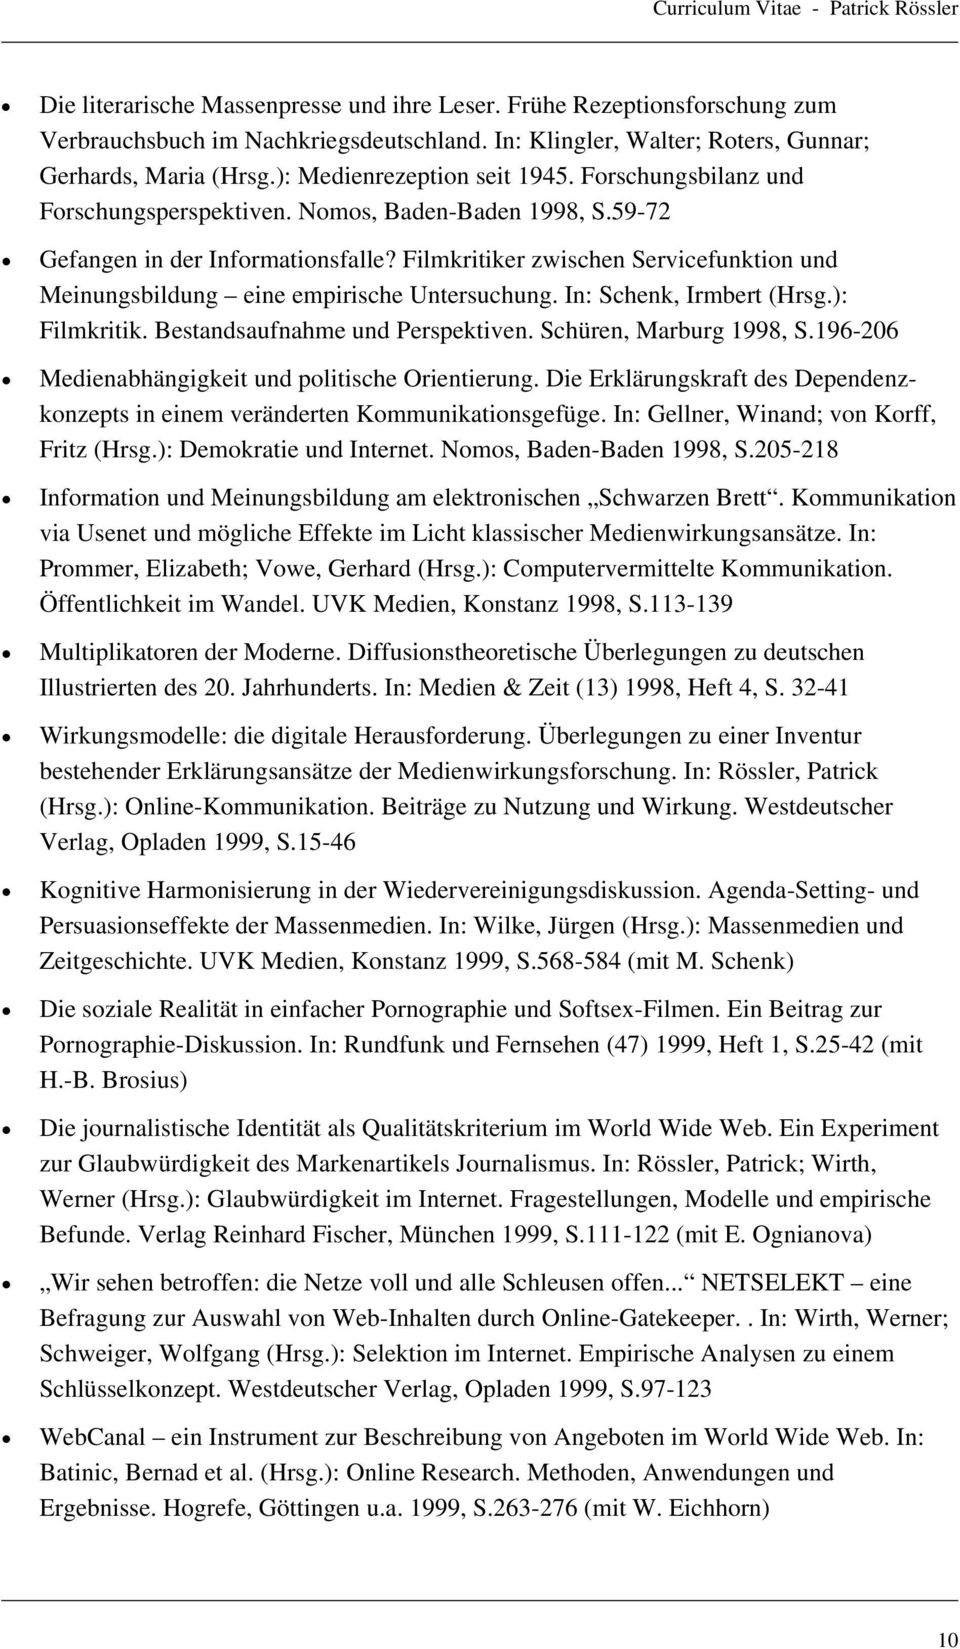 Filmkritiker zwischen Servicefunktion und Meinungsbildung eine empirische Untersuchung. In: Schenk, Irmbert (Hrsg.): Filmkritik. Bestandsaufnahme und Perspektiven. Schüren, Marburg 1998, S.